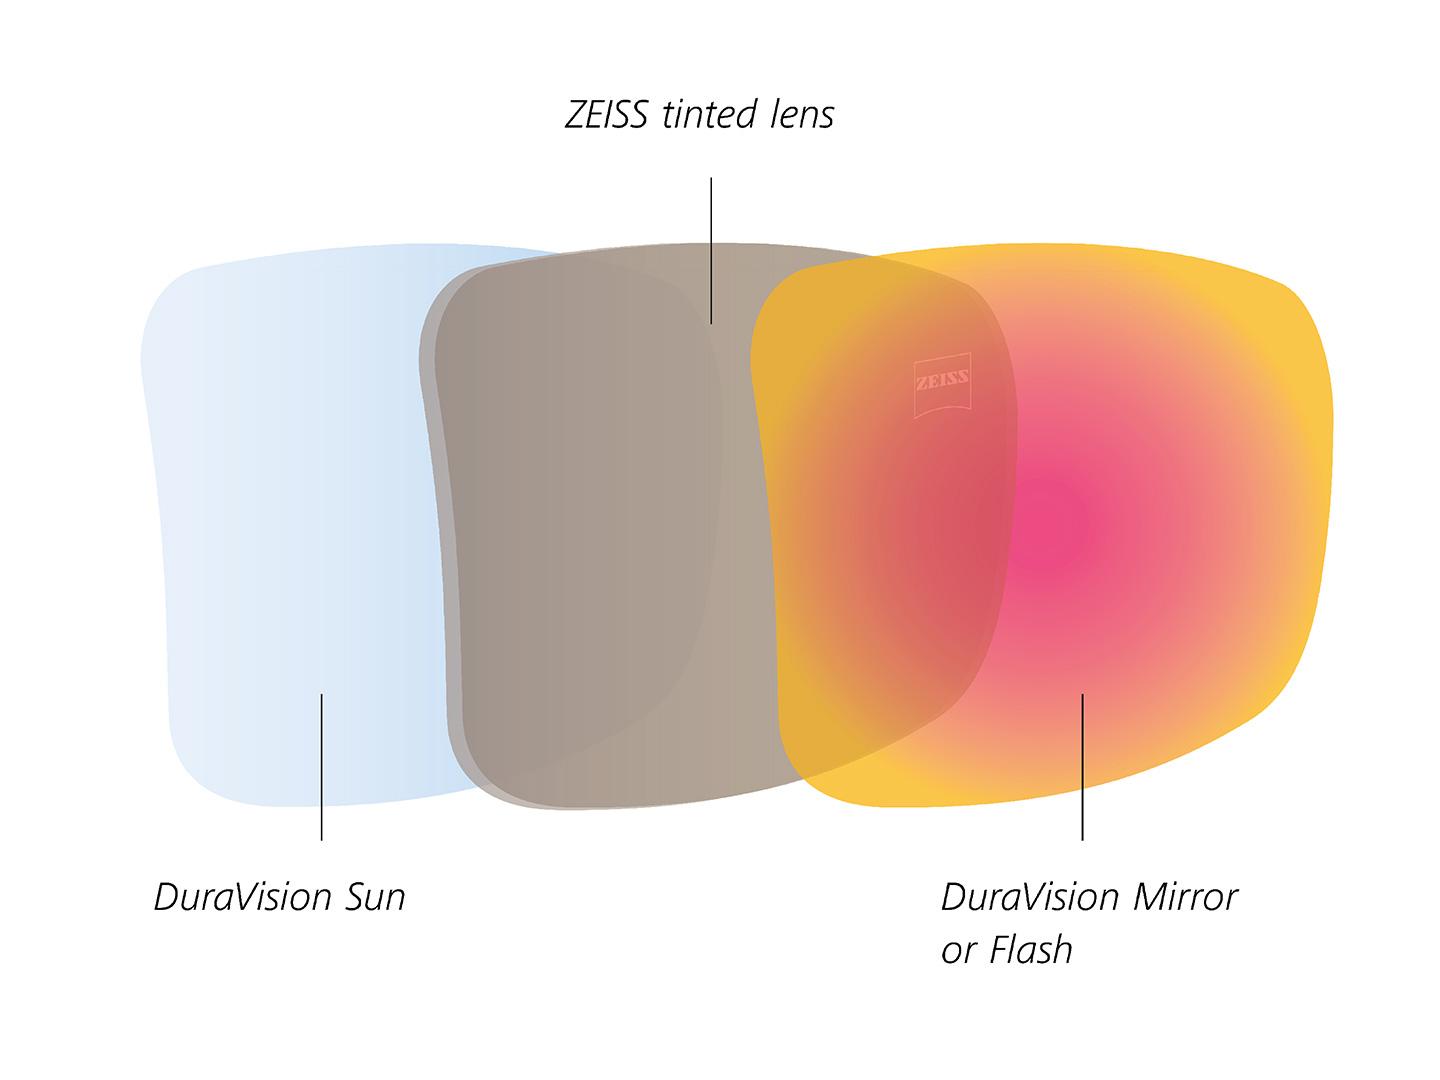 Ilustración de lentes tintados de ZEISS con protectores traseros y frontales para la luz solar 